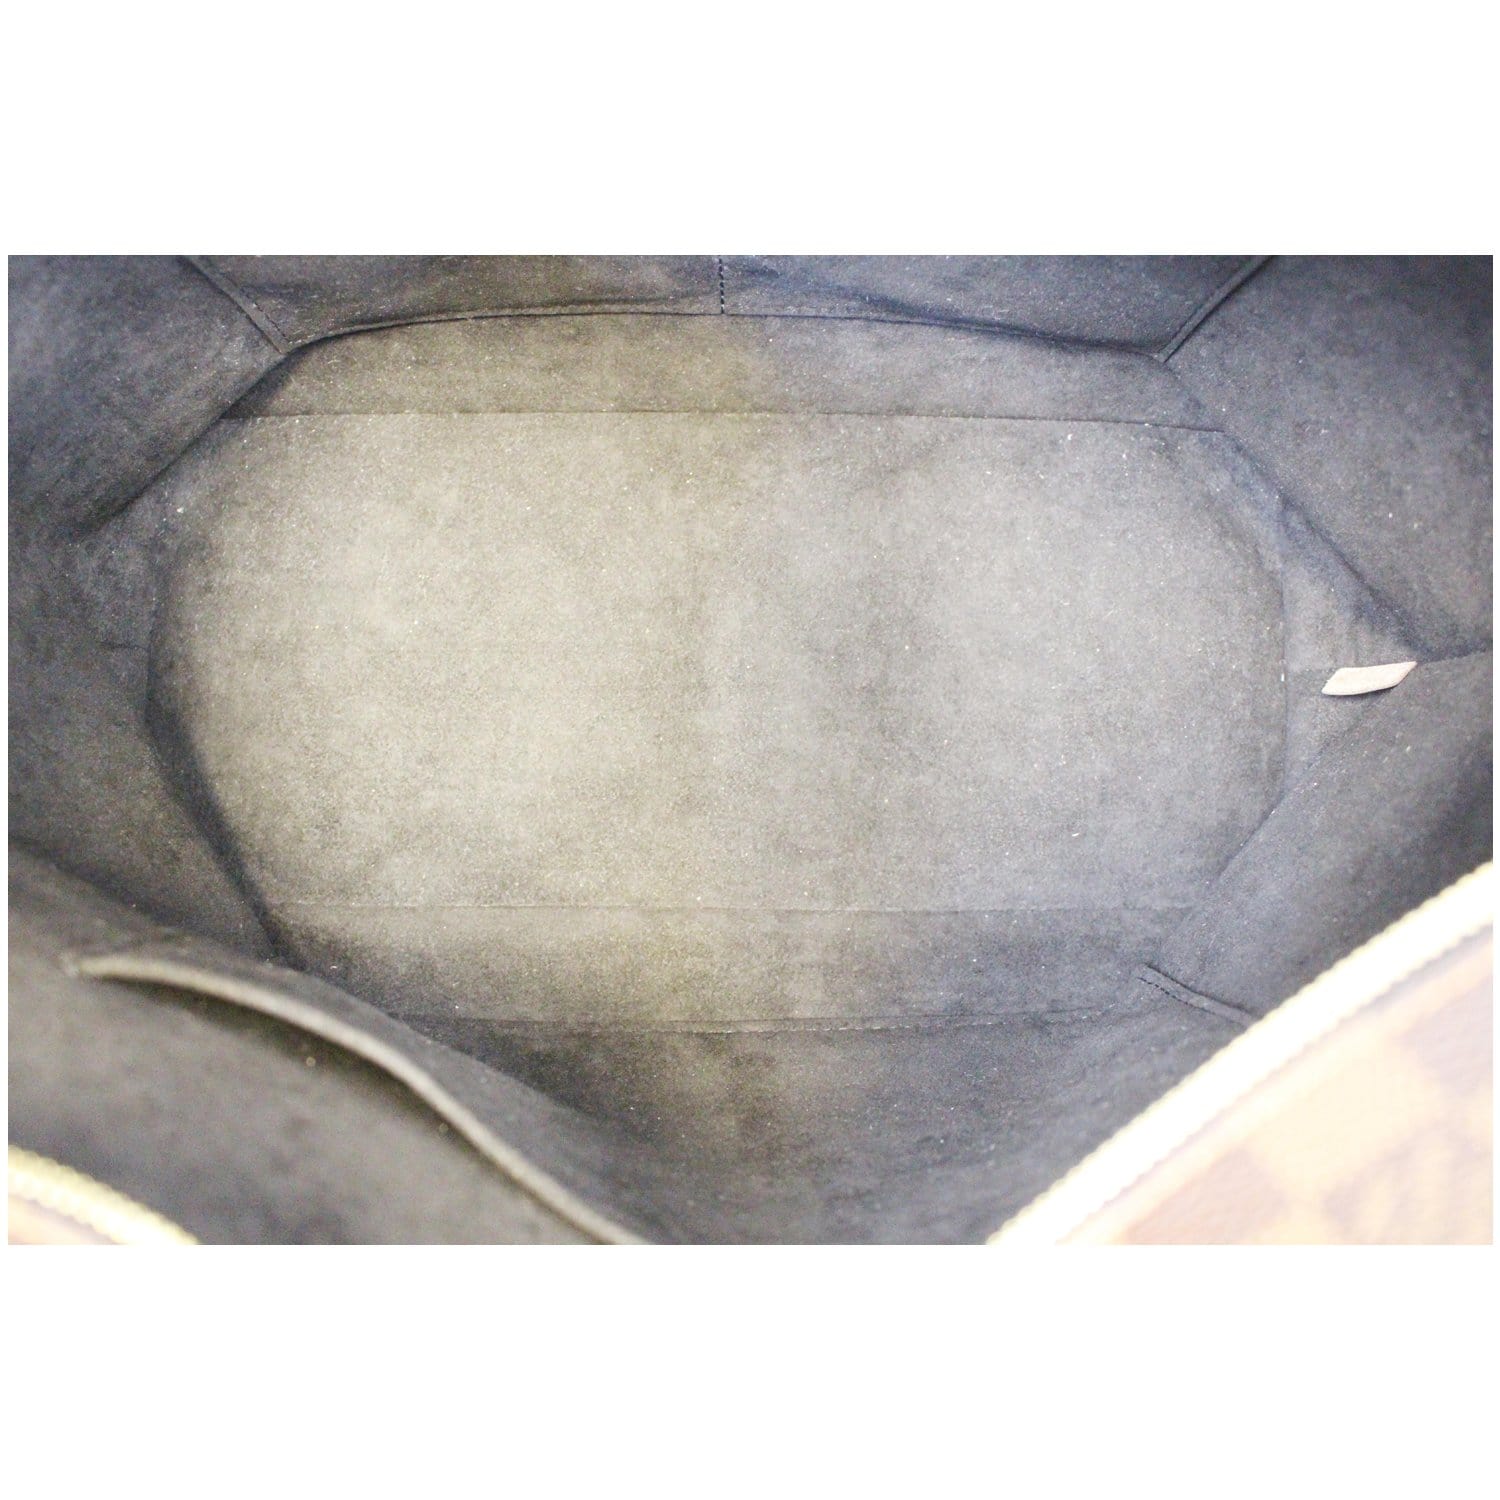 Louis Vuitton Damier Ebene Jersey Tote w/ Strap - Brown Shoulder Bags,  Handbags - LOU796501